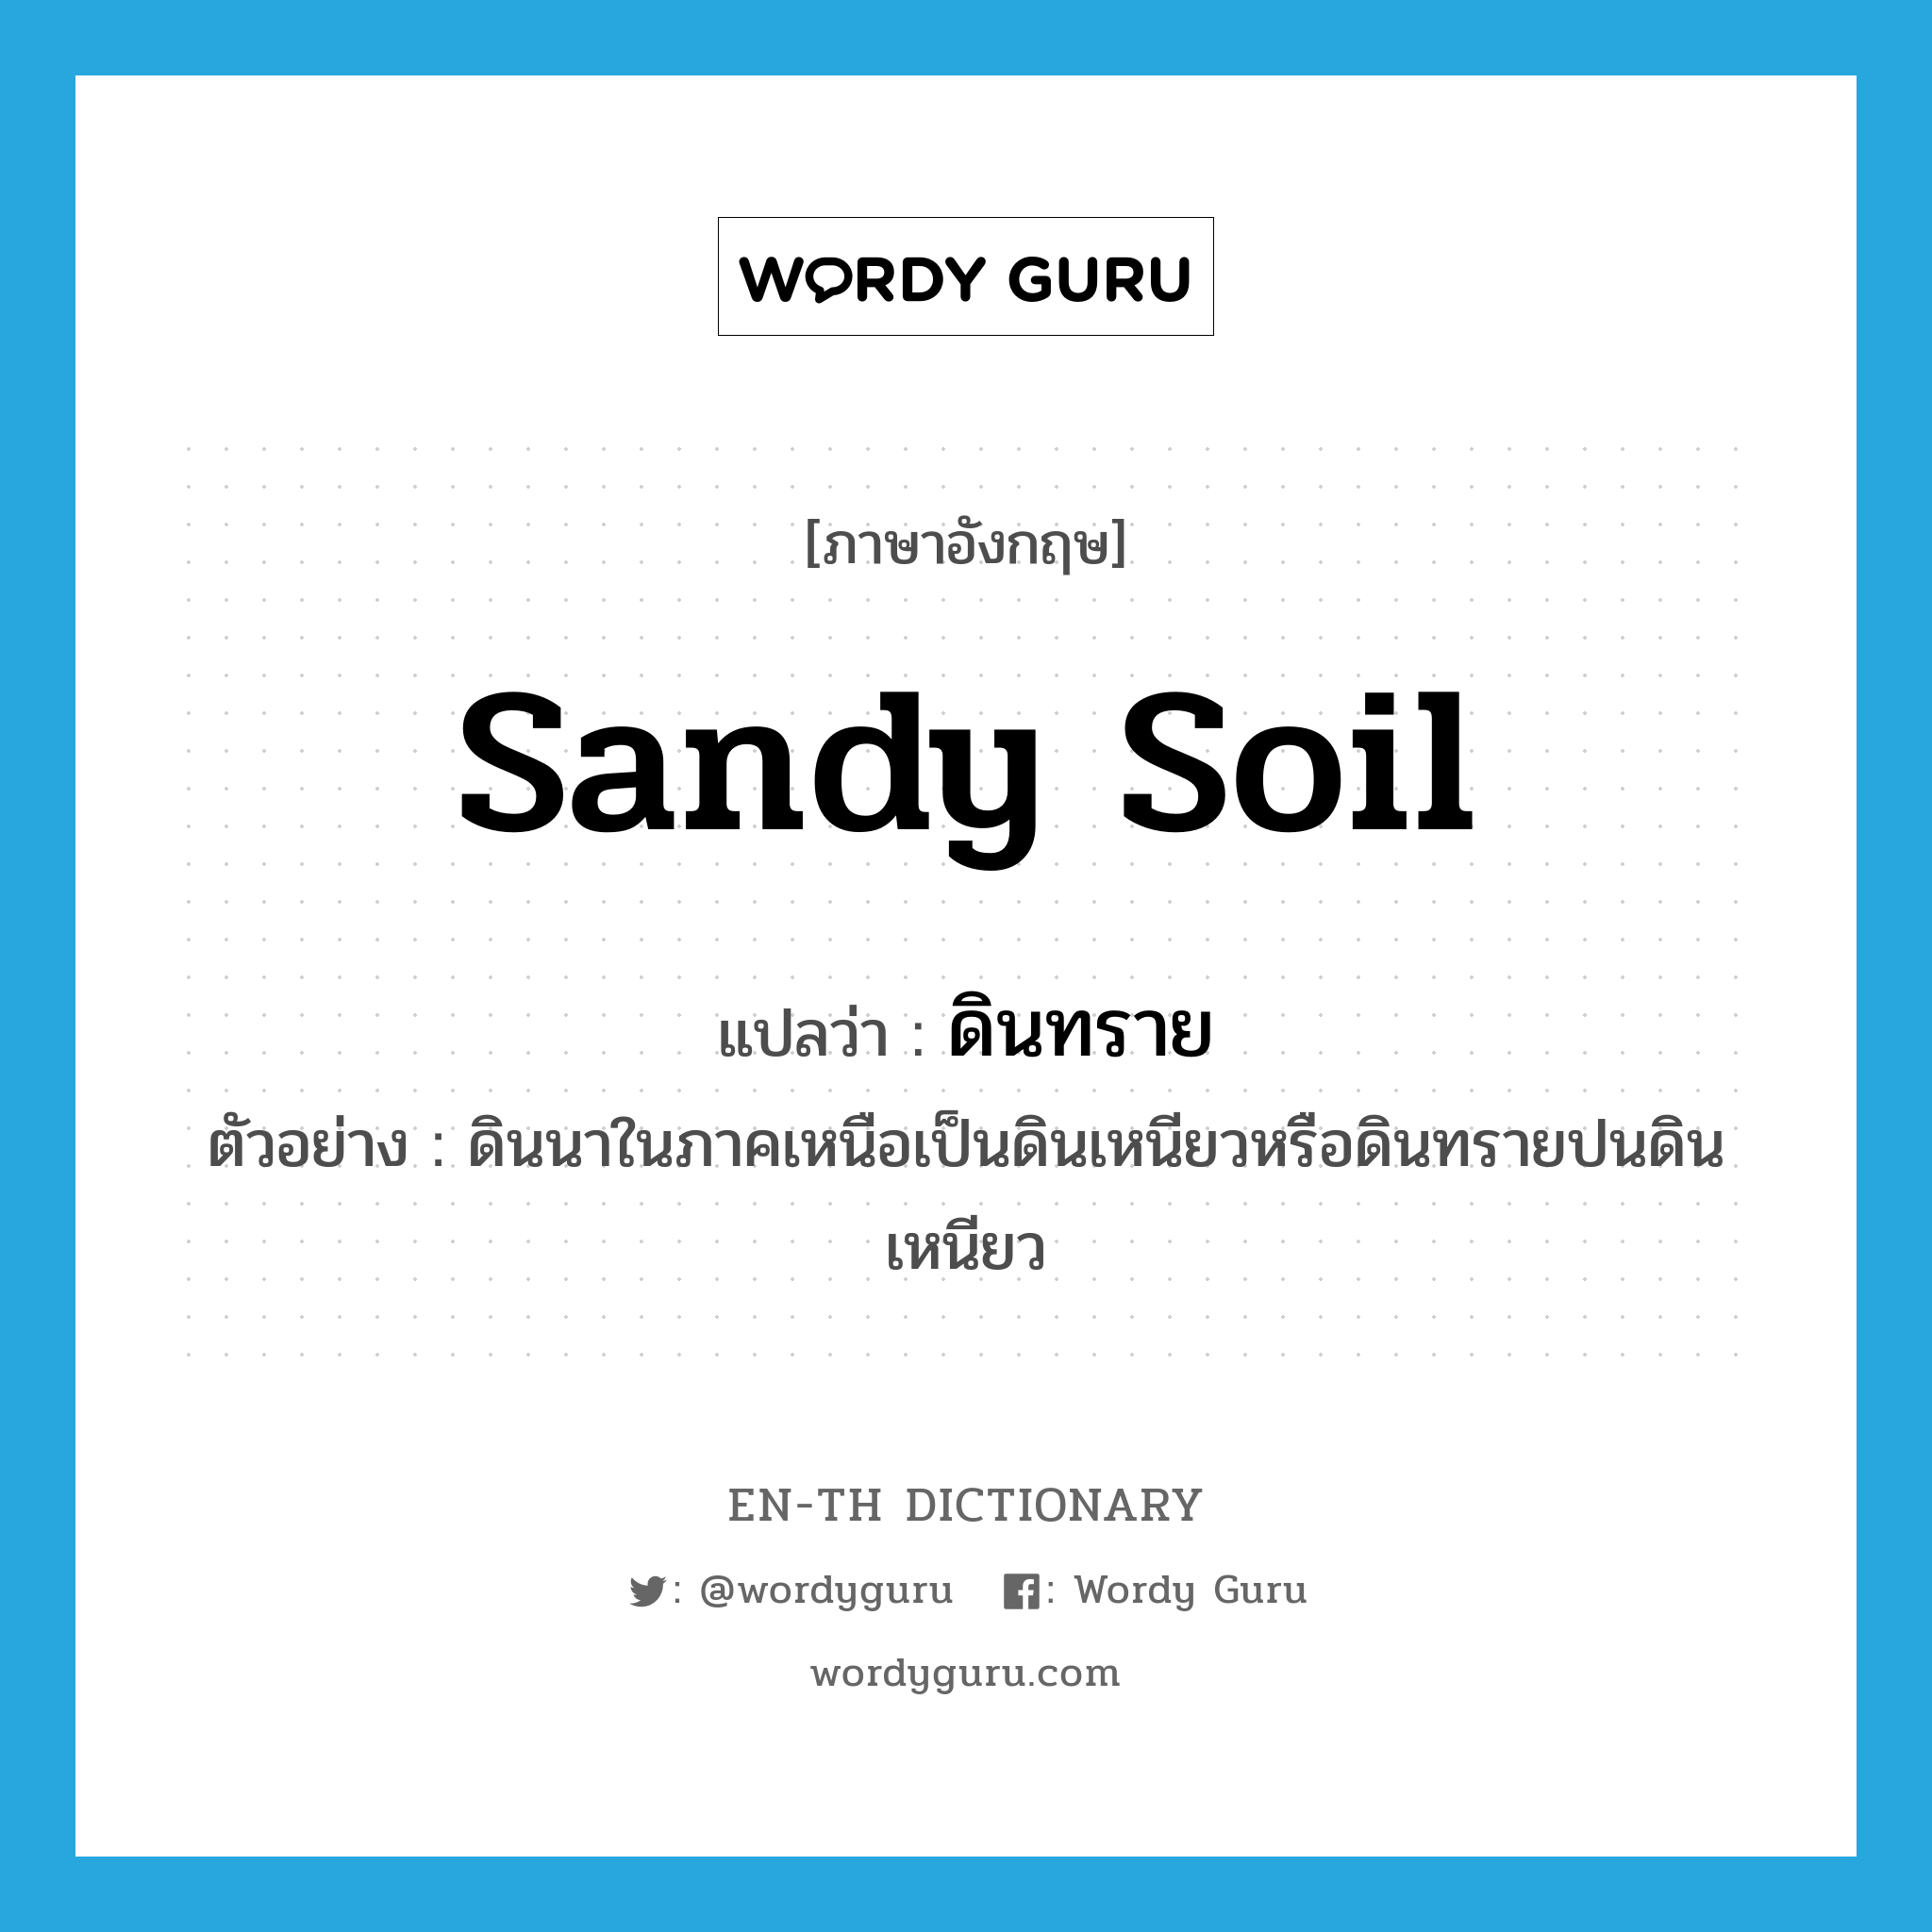 sandy soil แปลว่า?, คำศัพท์ภาษาอังกฤษ sandy soil แปลว่า ดินทราย ประเภท N ตัวอย่าง ดินนาในภาคเหนือเป็นดินเหนียวหรือดินทรายปนดินเหนียว หมวด N